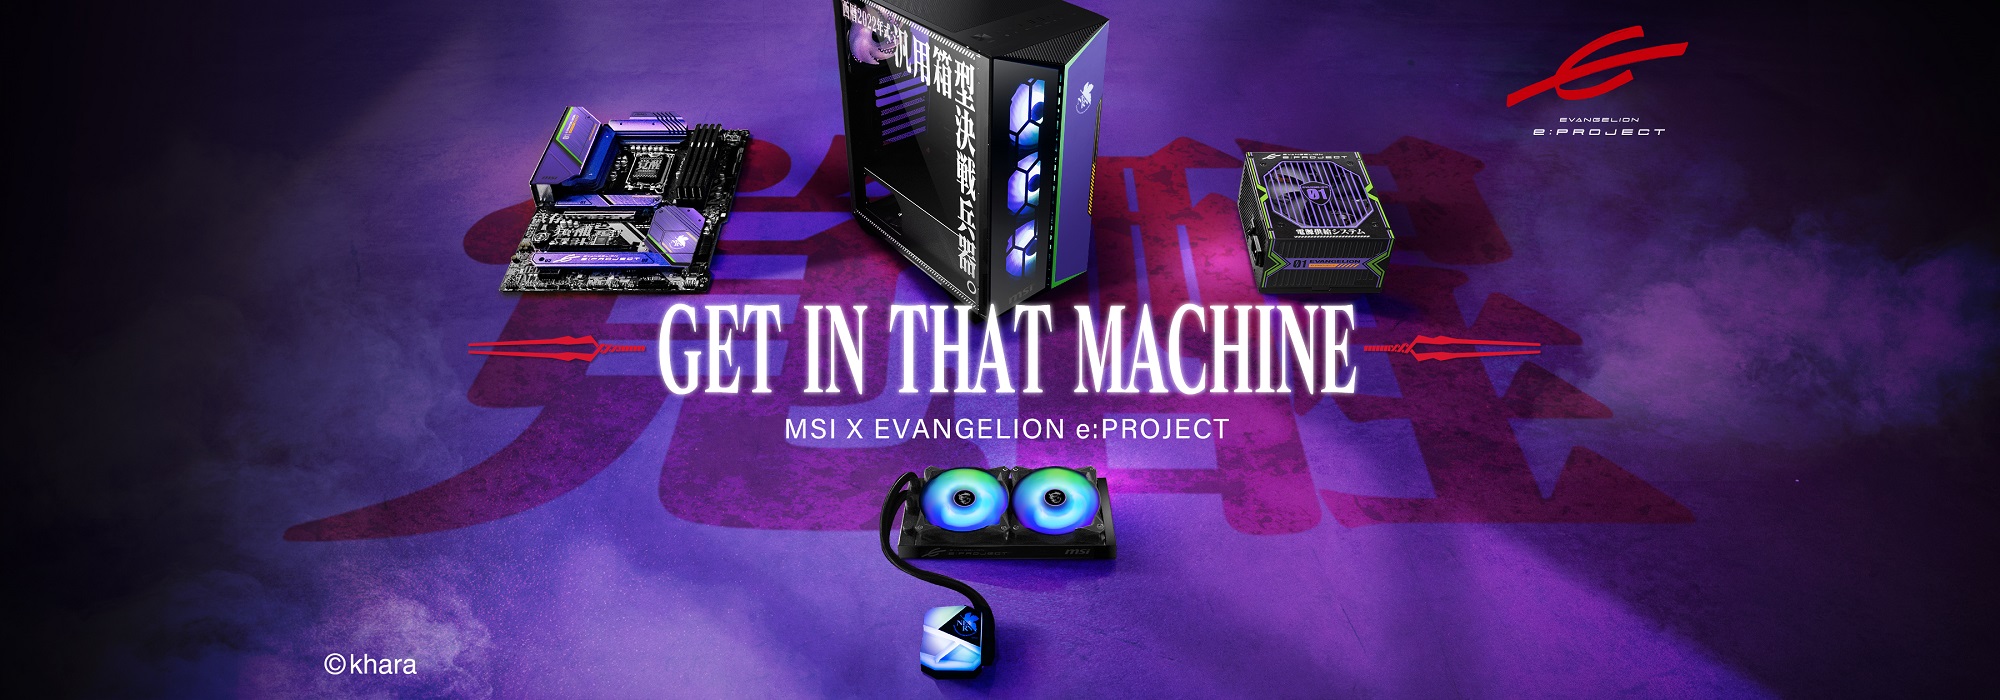 MSI ขอแนะนำคอลเลคชั่นพิเศษ MSI X EVANGELION e: PROJECT - GET IN THAT MACHINE วางจำหน่ายแล้ววันนี้!